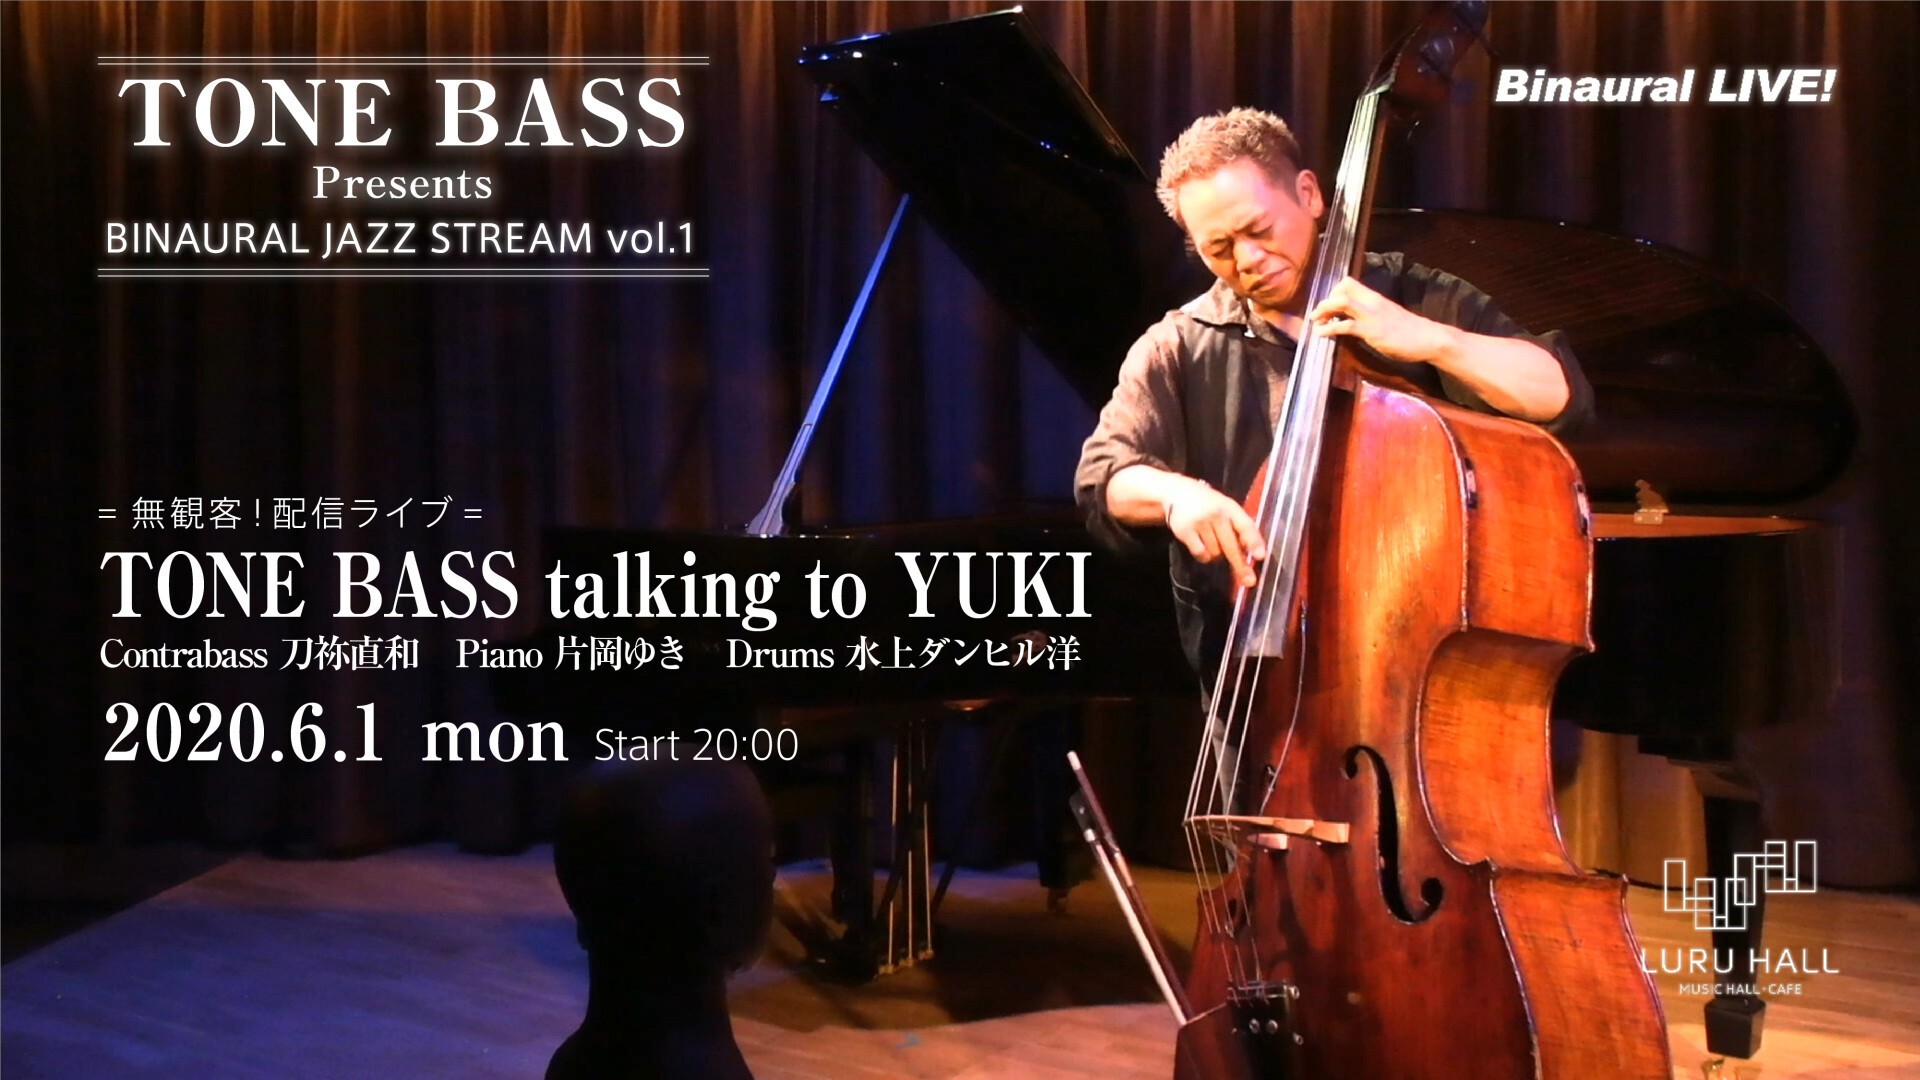 アーカイブ購入可 Tone Bass Presents Binaural Jazz Stream Vol 1 Binaural Live Vol 10 Zaiko